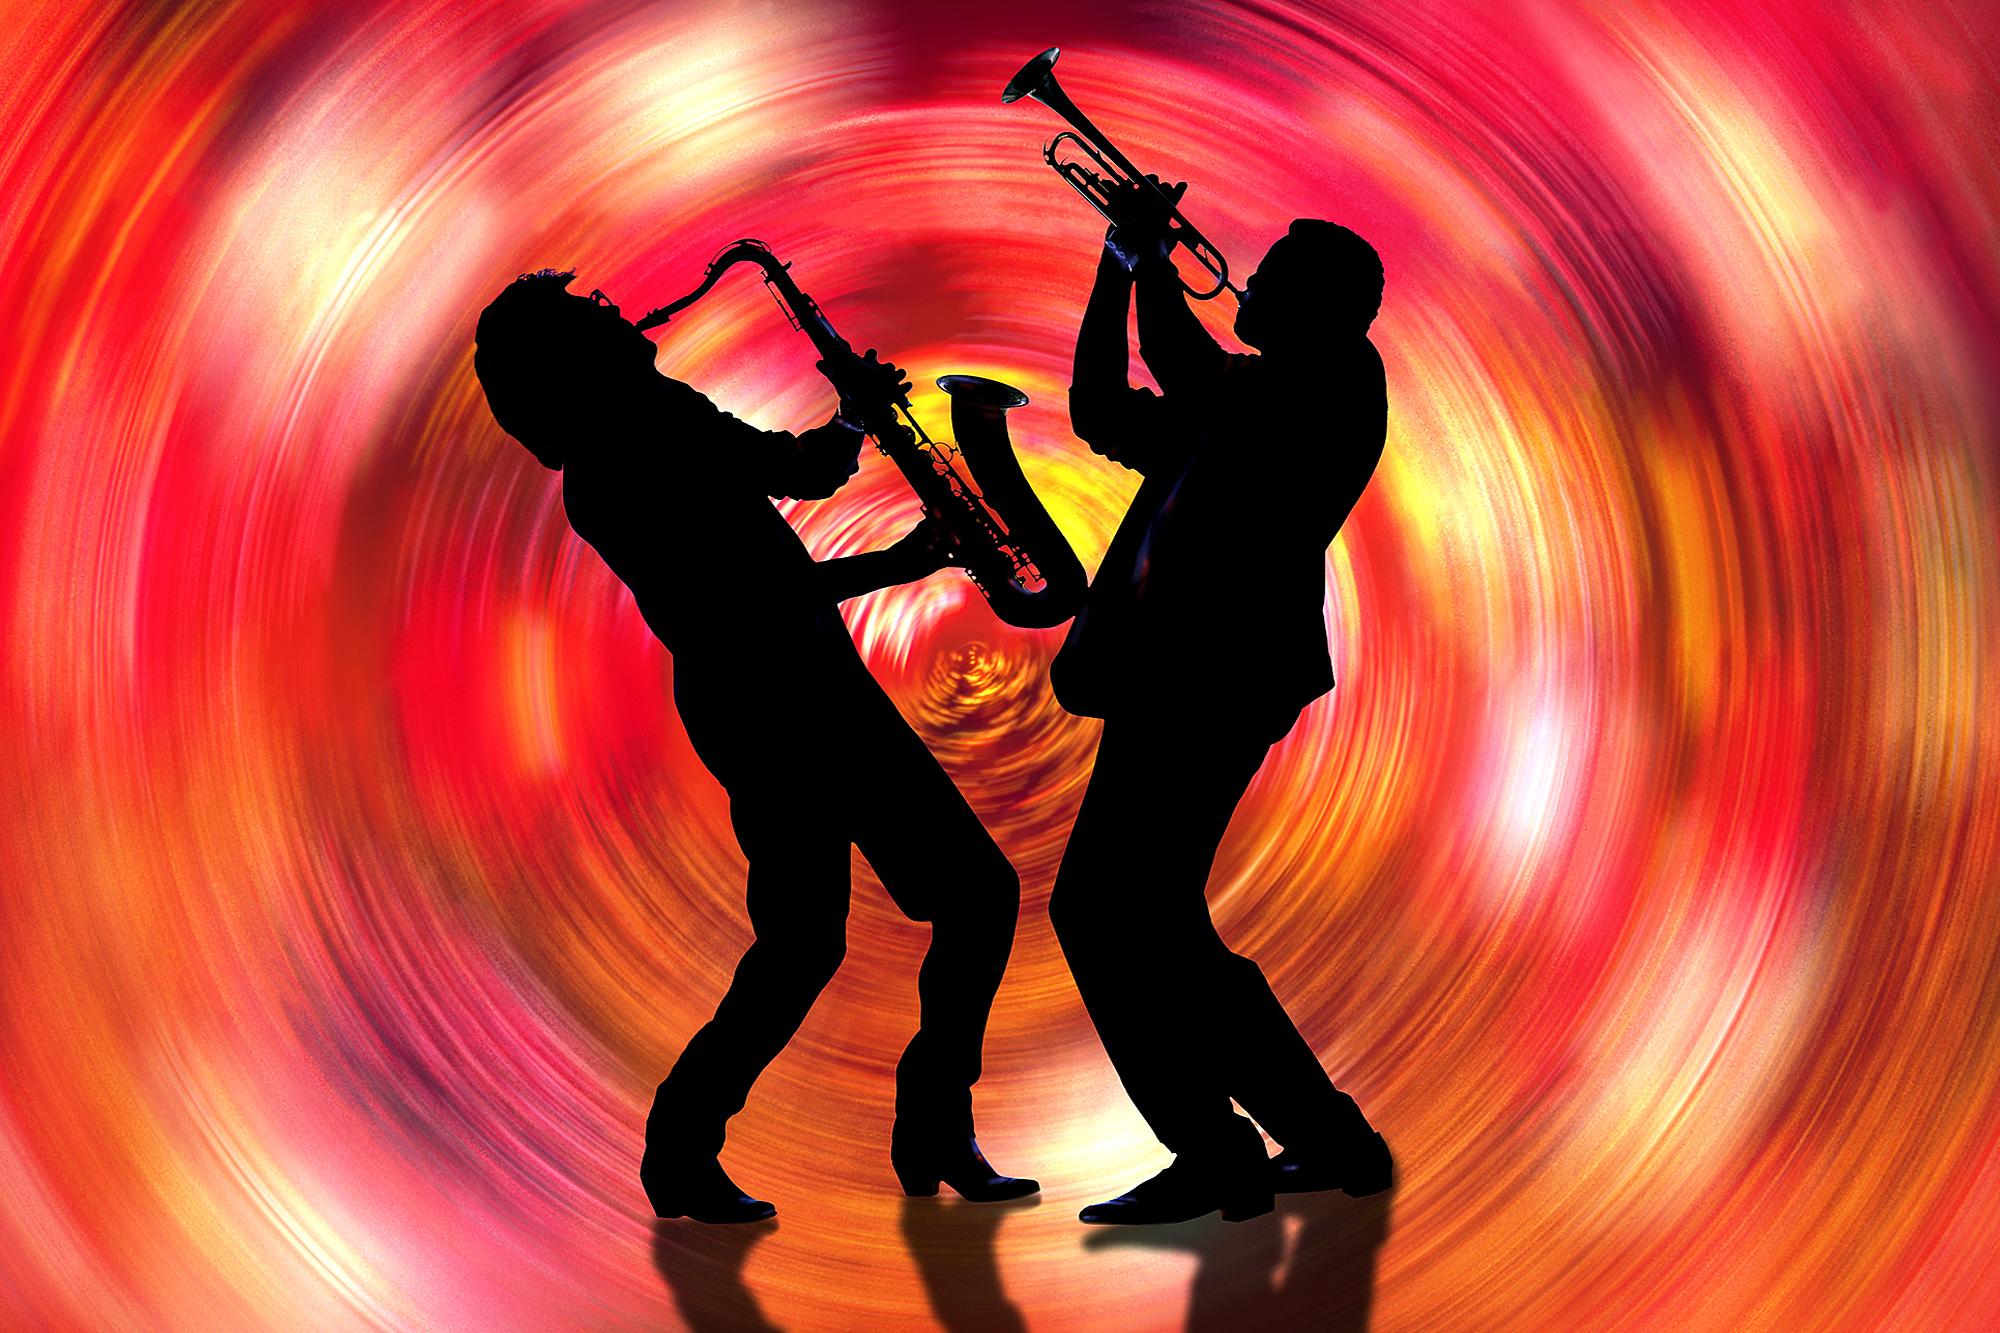 Mitchell Funk Color Photograph – Jazzmusiker Saxophone und Trompetenwirbel in rotem Wirbel  - Musik ist Farbe